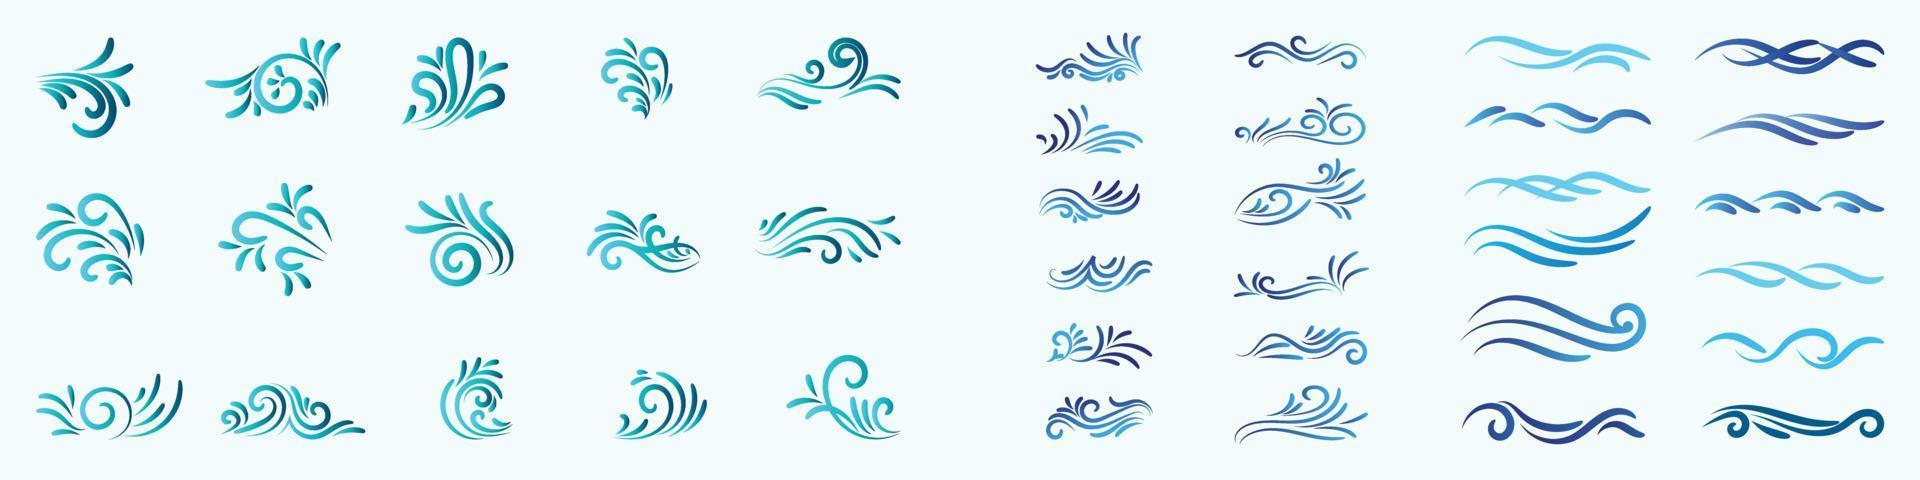 vagues d'eau vectorielles, fond de vagues aqua, vagues de l'océan et de la mer, illustration vectorielle d'icône de vague d'eau, croquis des vagues de la mer. vague de tempête, vintage et océan plage tempêtes ensemble d'illustrations vectorielles dessinées à la main. vecteur